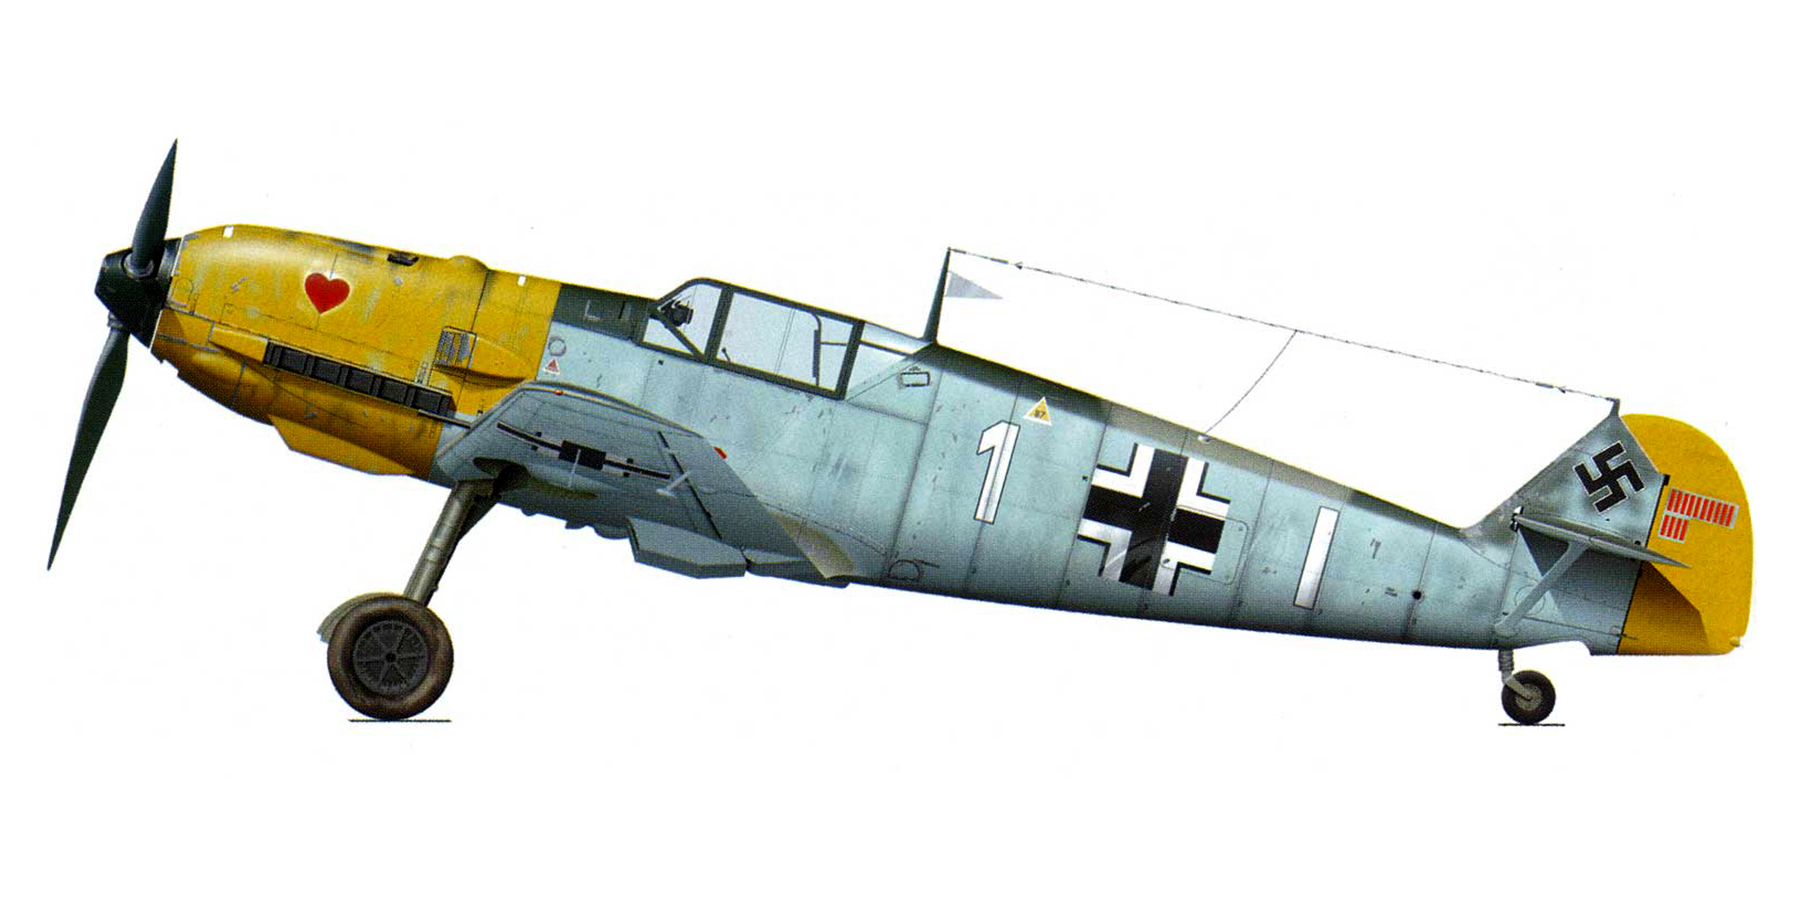 Messerschmitt Bf 109E4 7.JG26 White 1 Joachim Munchenberg France Sep 1940 0A